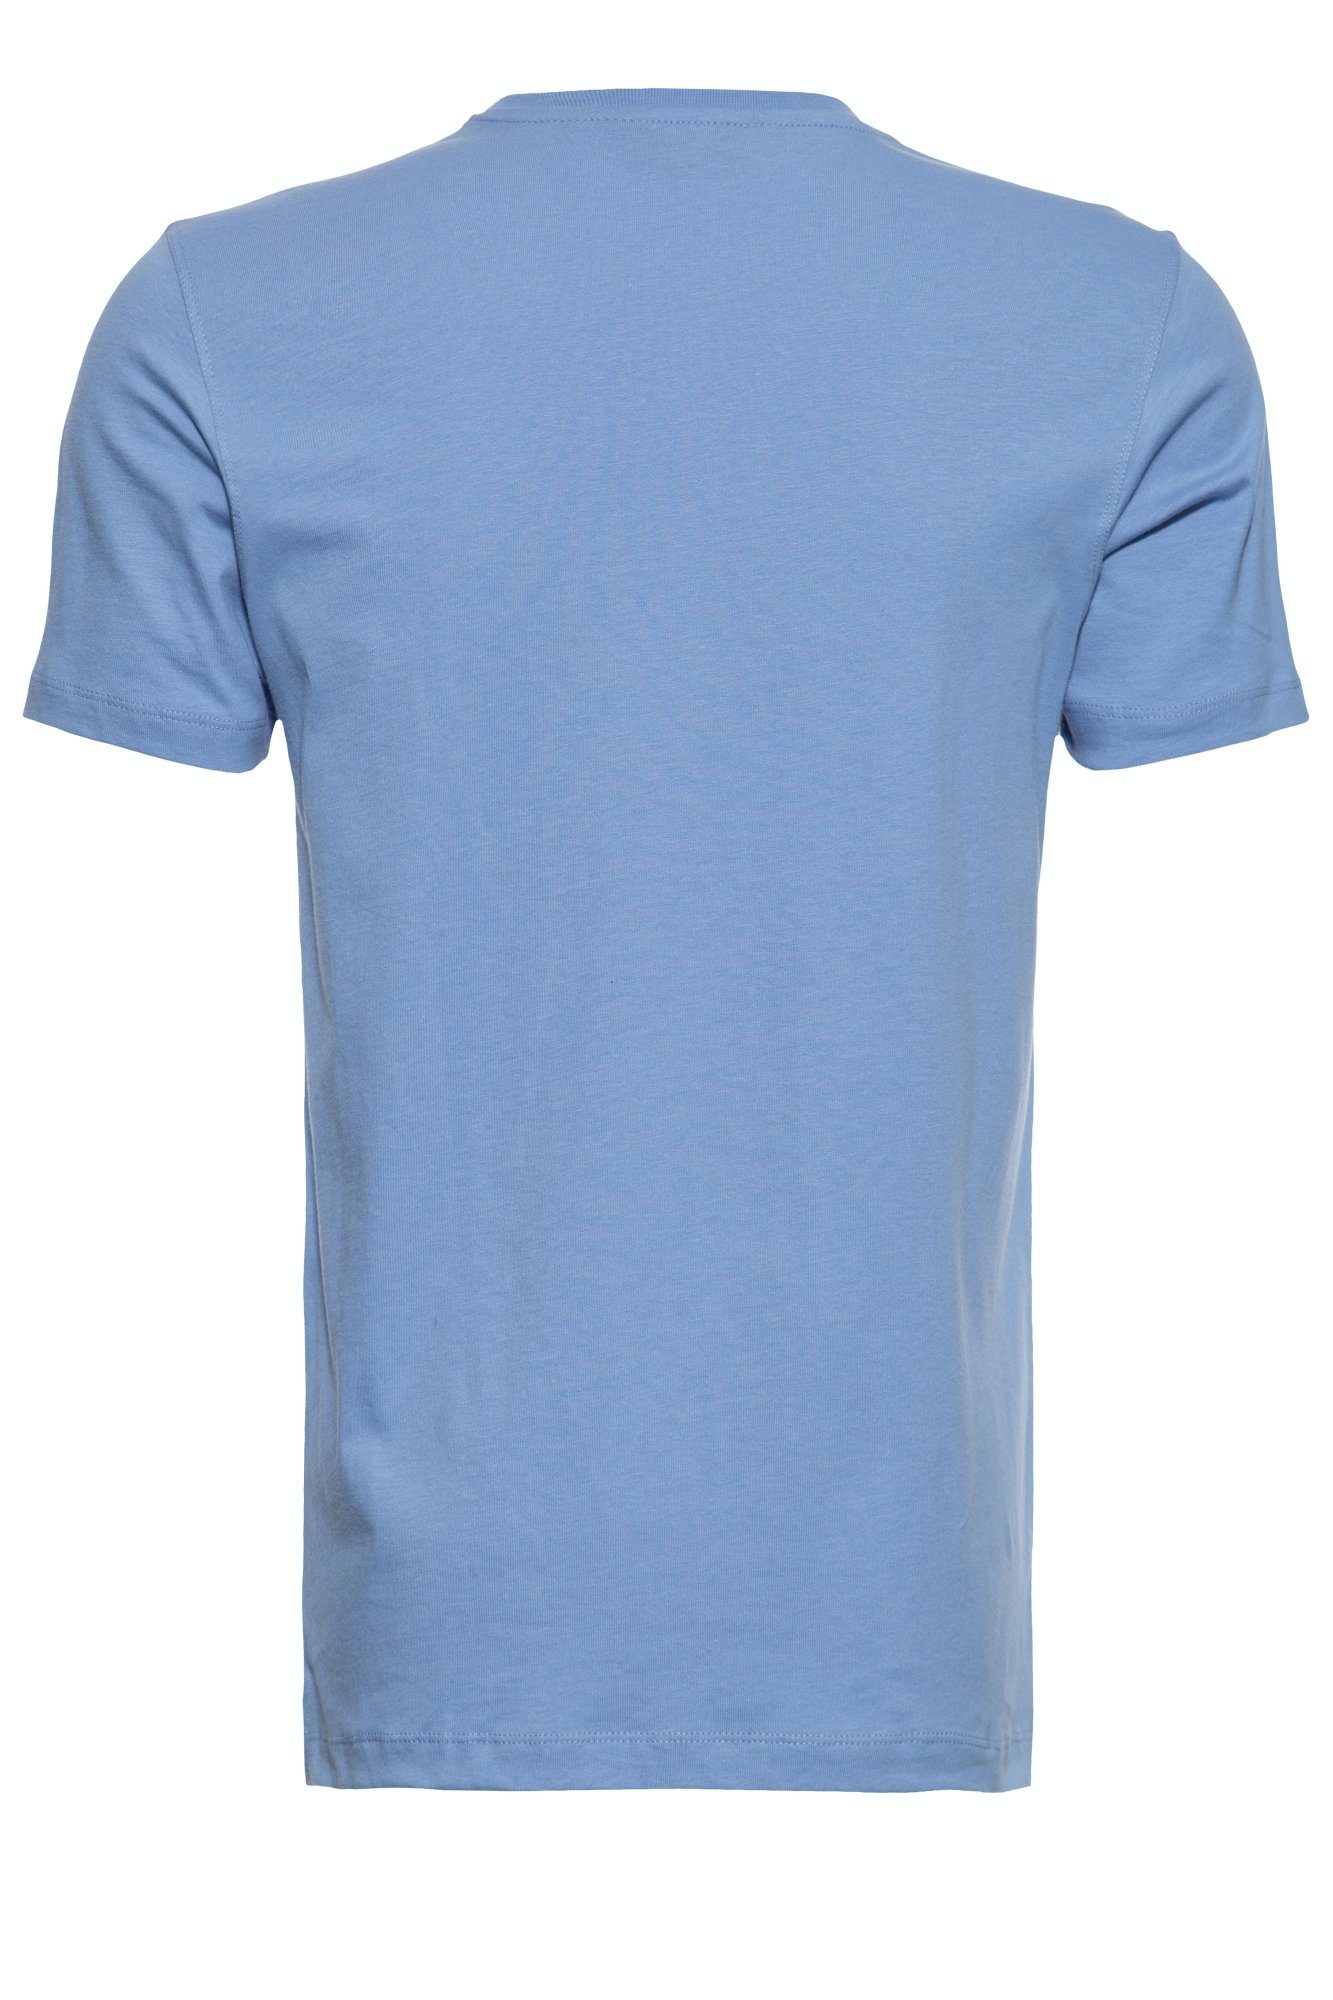 Glory Way of klassischem Rundhals T-Shirt hellblau mit